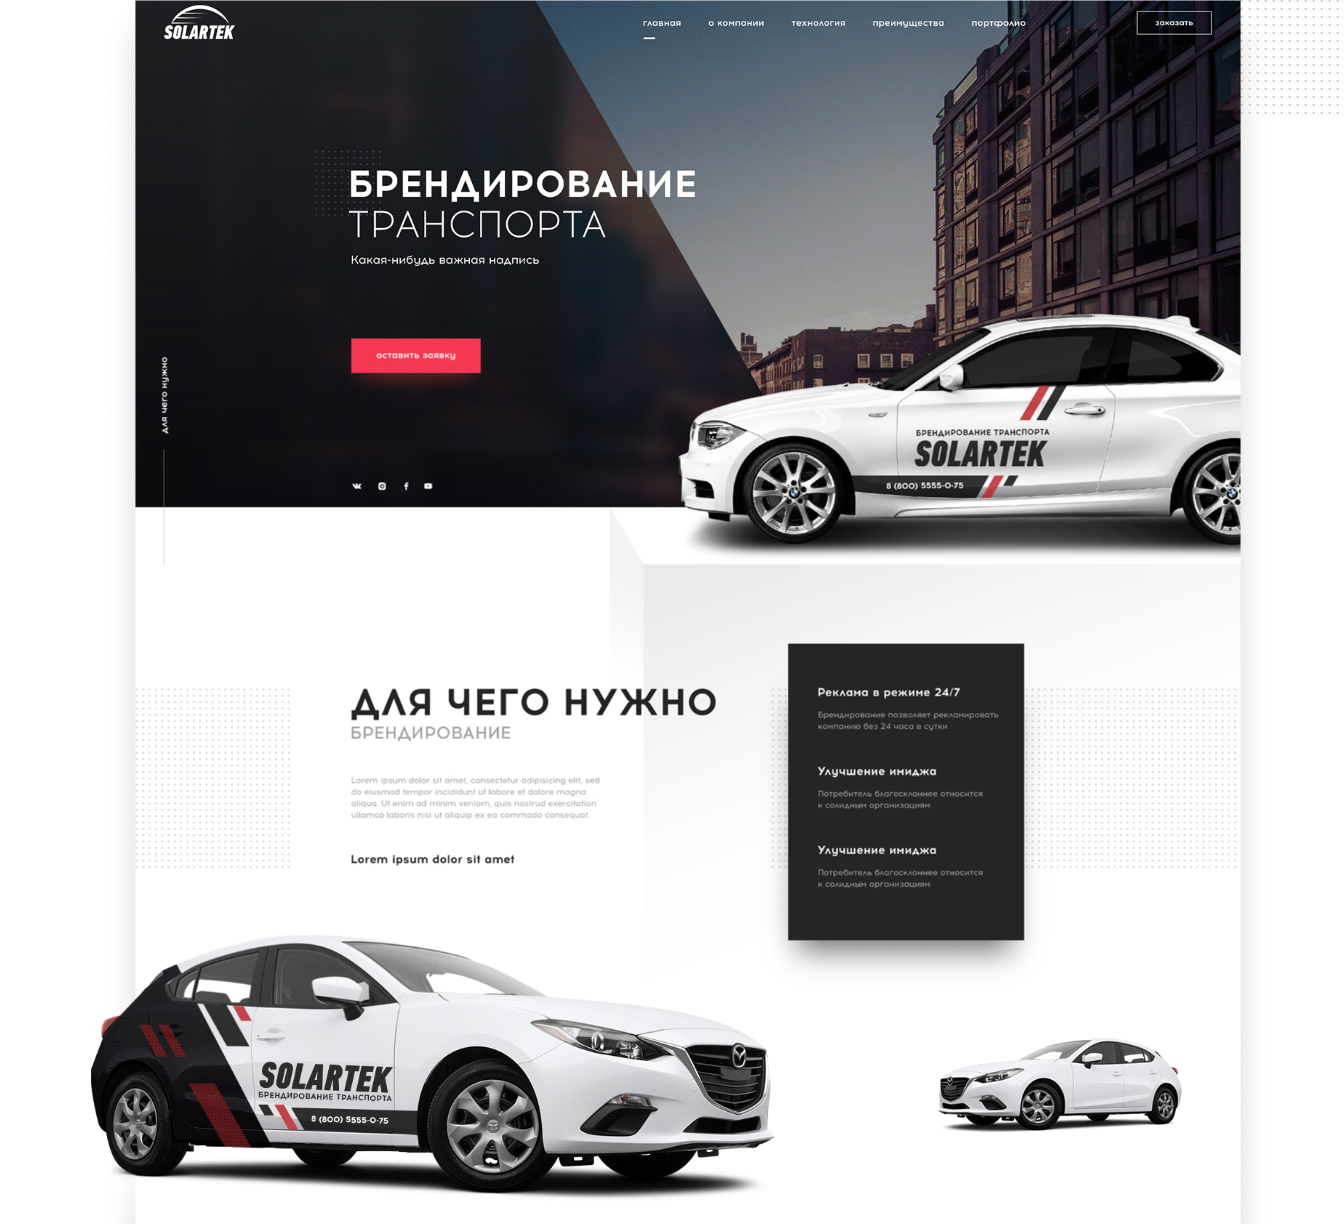 Mẫu thiết kế website Gara dịch vụ sửa chữa, chăm sóc, bảo dưỡng ô tô, xe hơi siêu đẹp 10 behance/gallery/79118417/Web-Design-Landing-Page-Branding-Transport